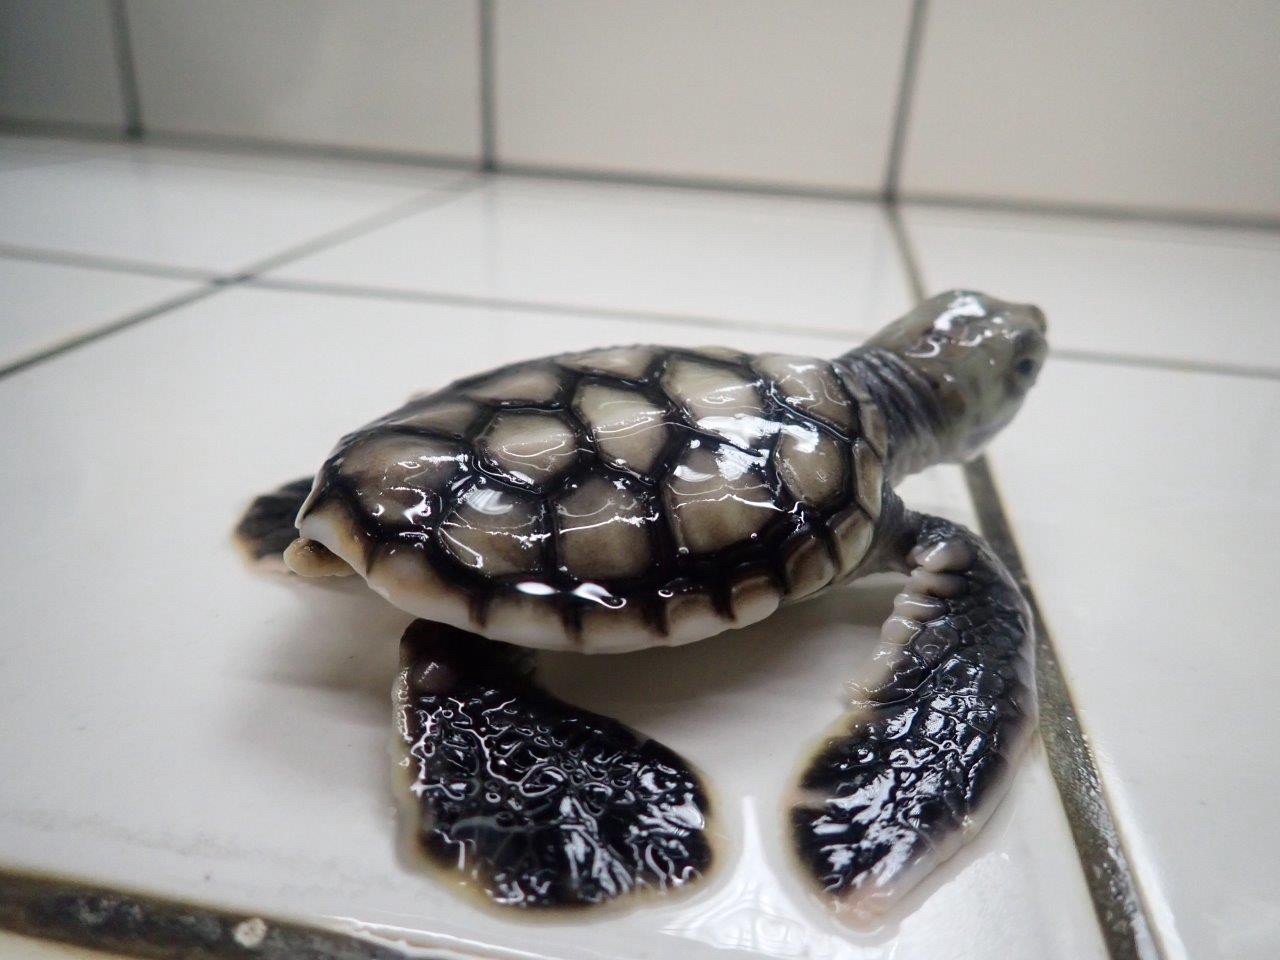 Te mana o te moana protects sea turtles in French Polynesia